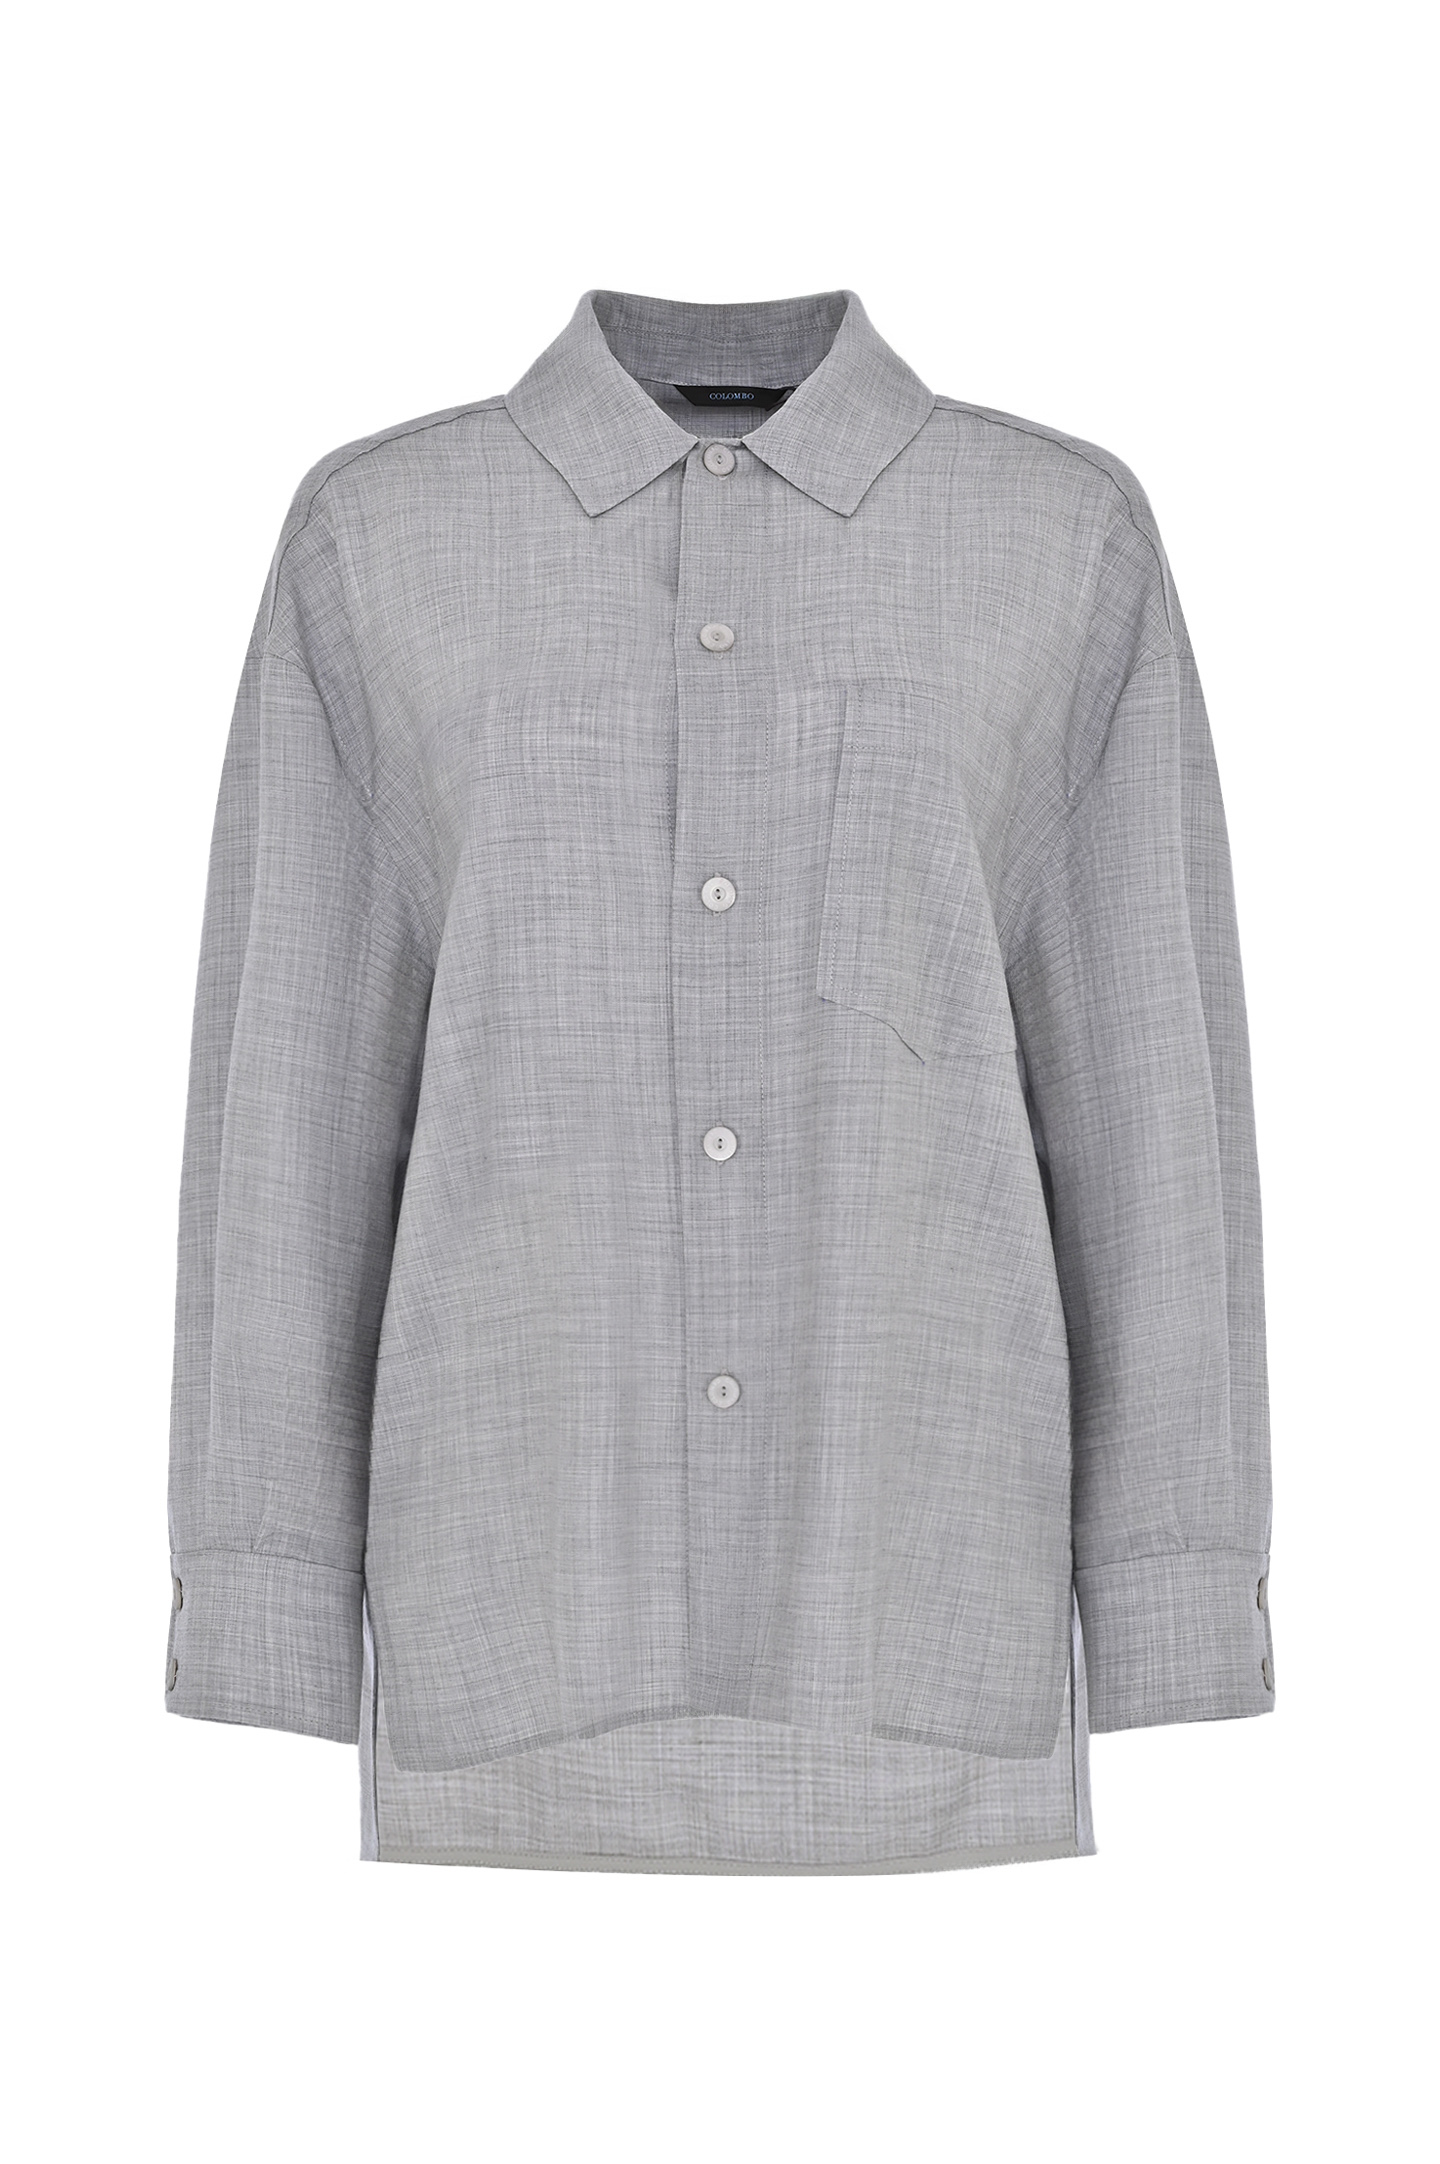 Блуза-рубашка из кашемира COLOMBO CM00366/-/7806, цвет: Серый, Женский